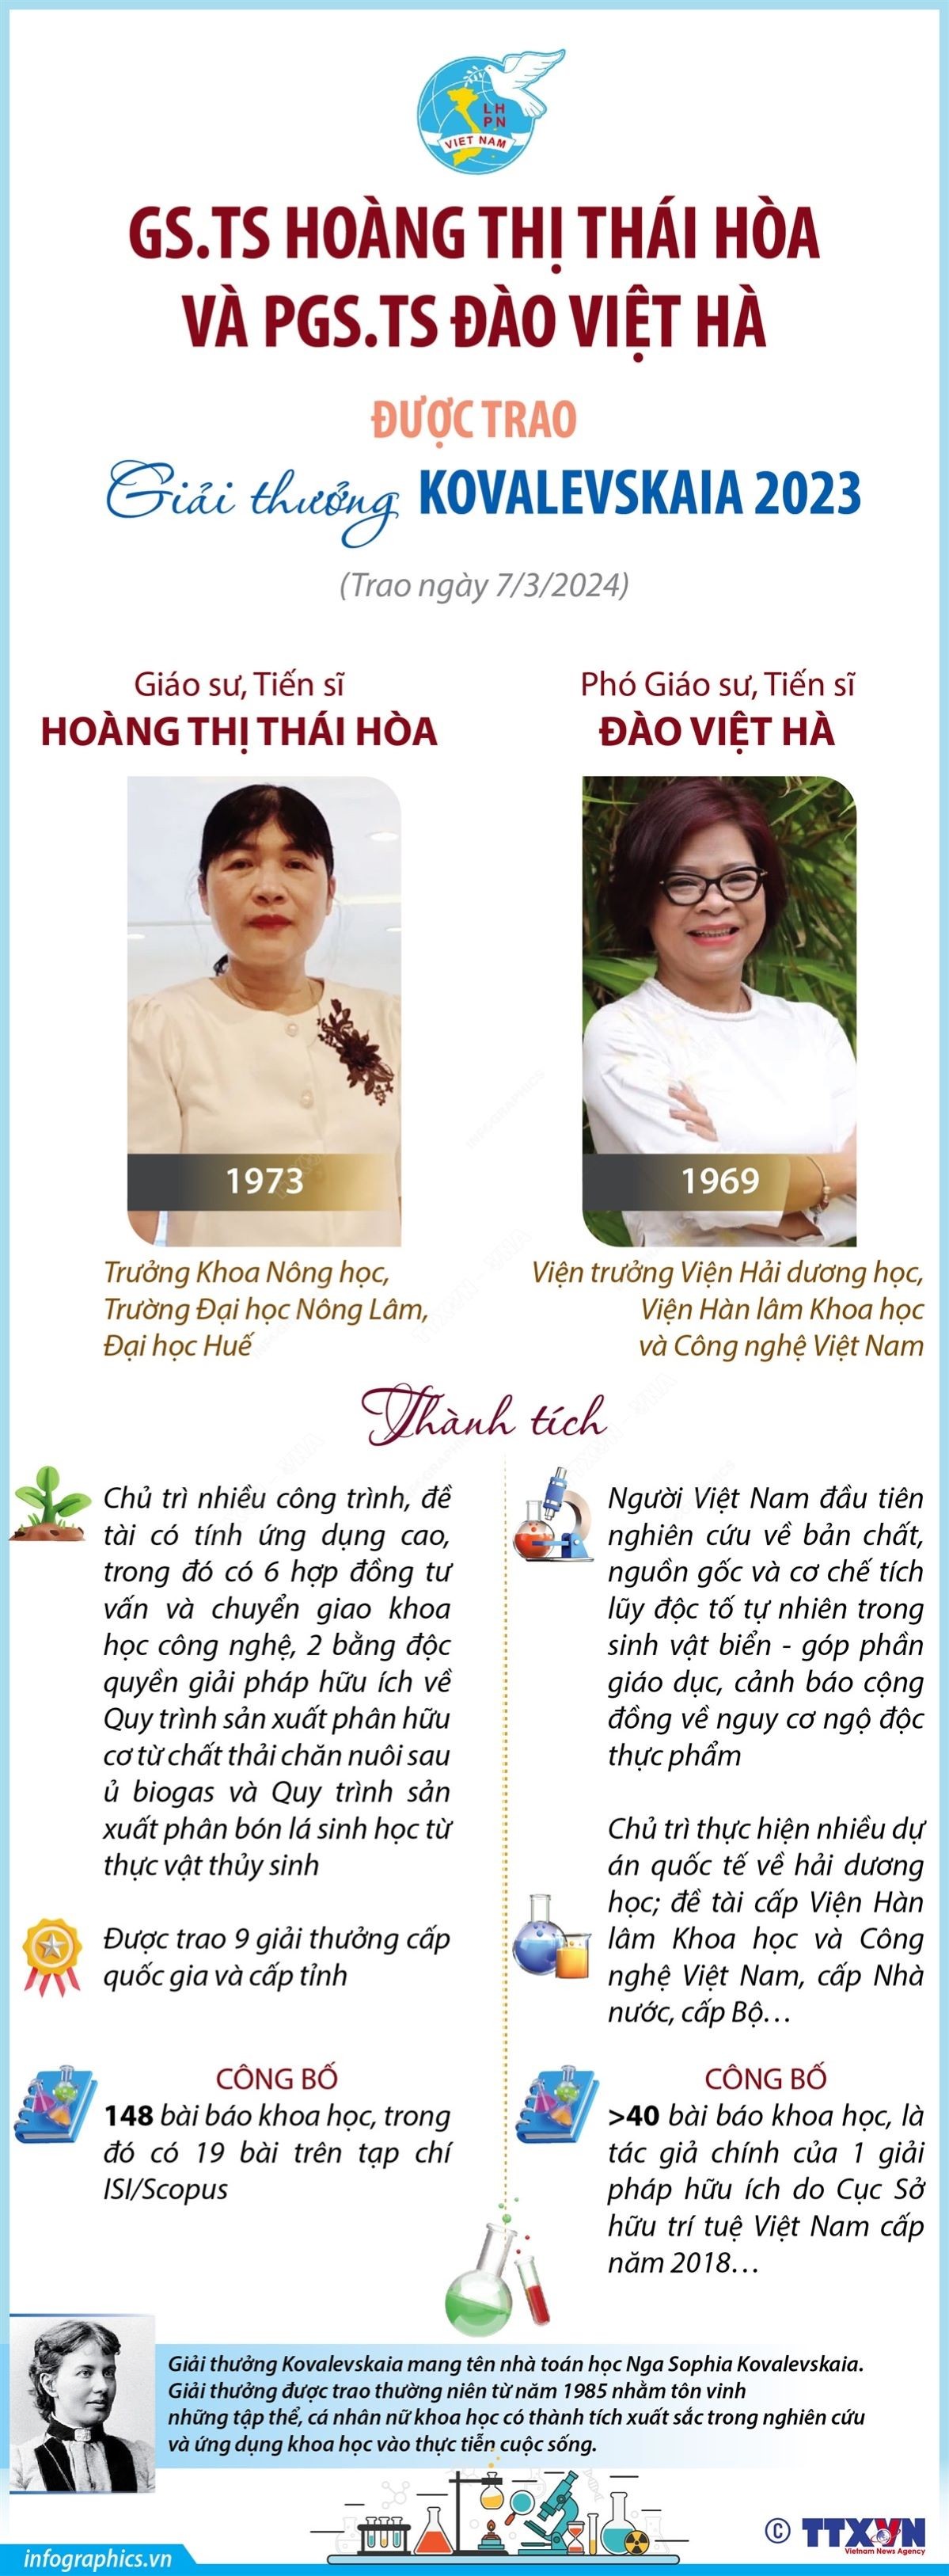 Hai nhà khoa học nữ Việt Nam được trao Giải thưởng Kovalevskaia 2023